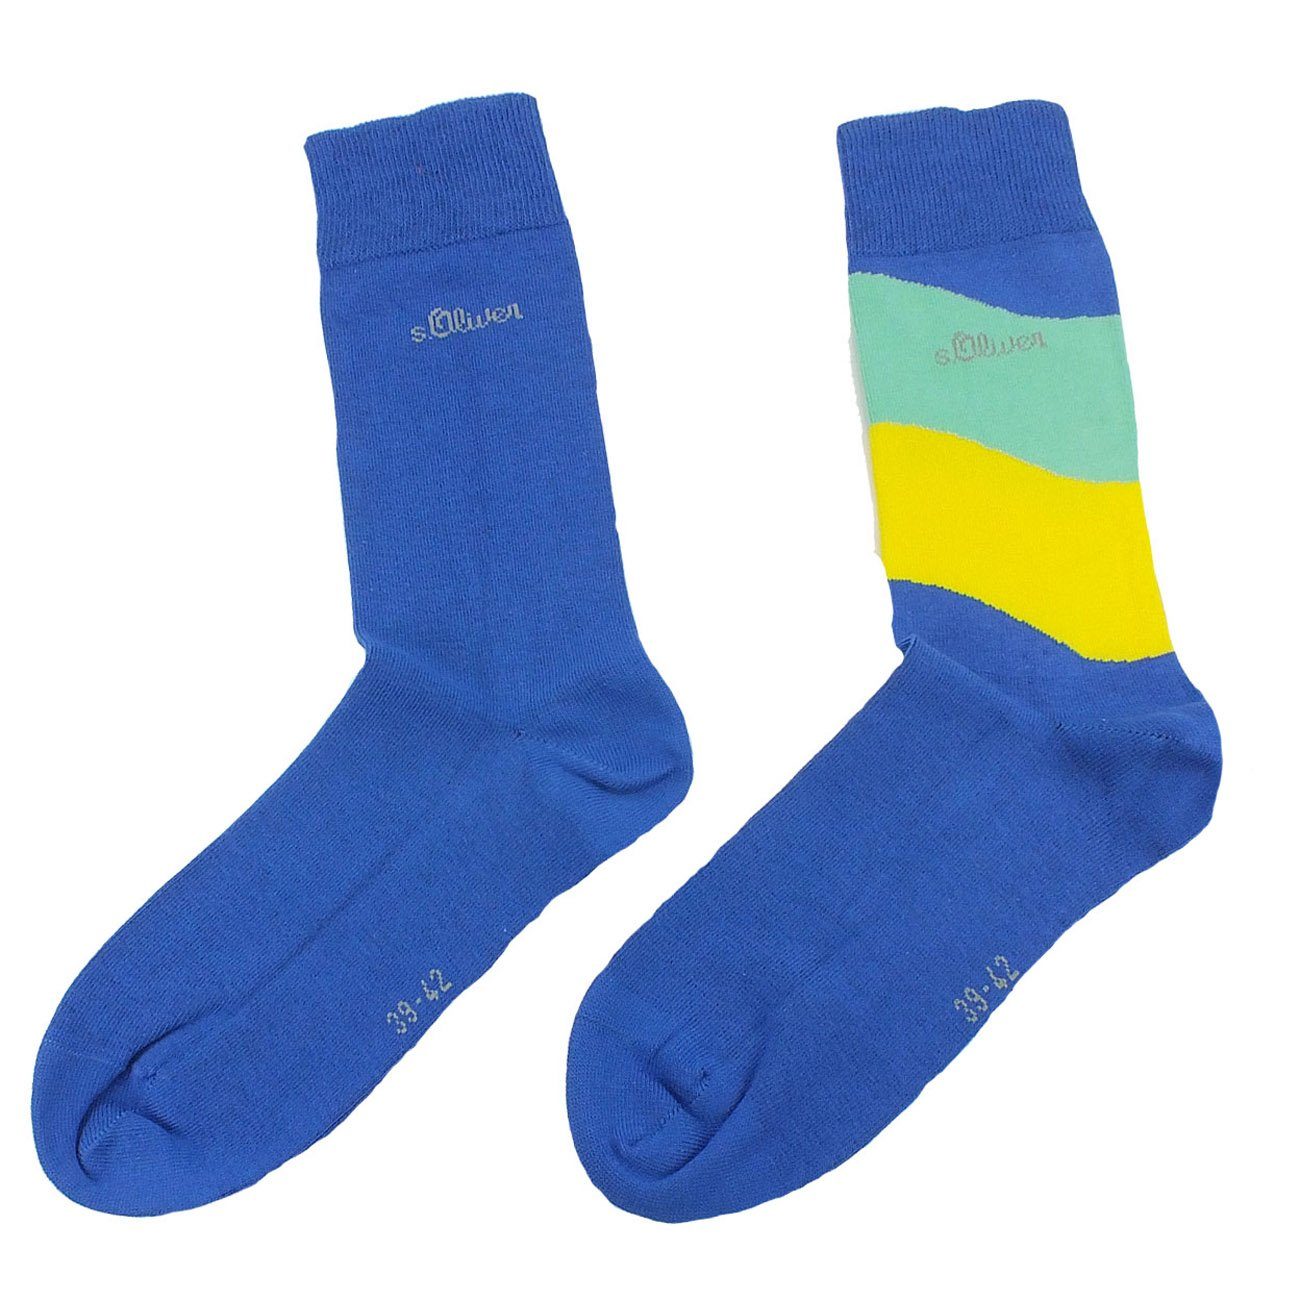 s.Oliver Langsocken S20219 (Packung, 2-Paar, 2 Paar) Herren Damen Unisex Business Socken Baumwolle 69 prussian blue